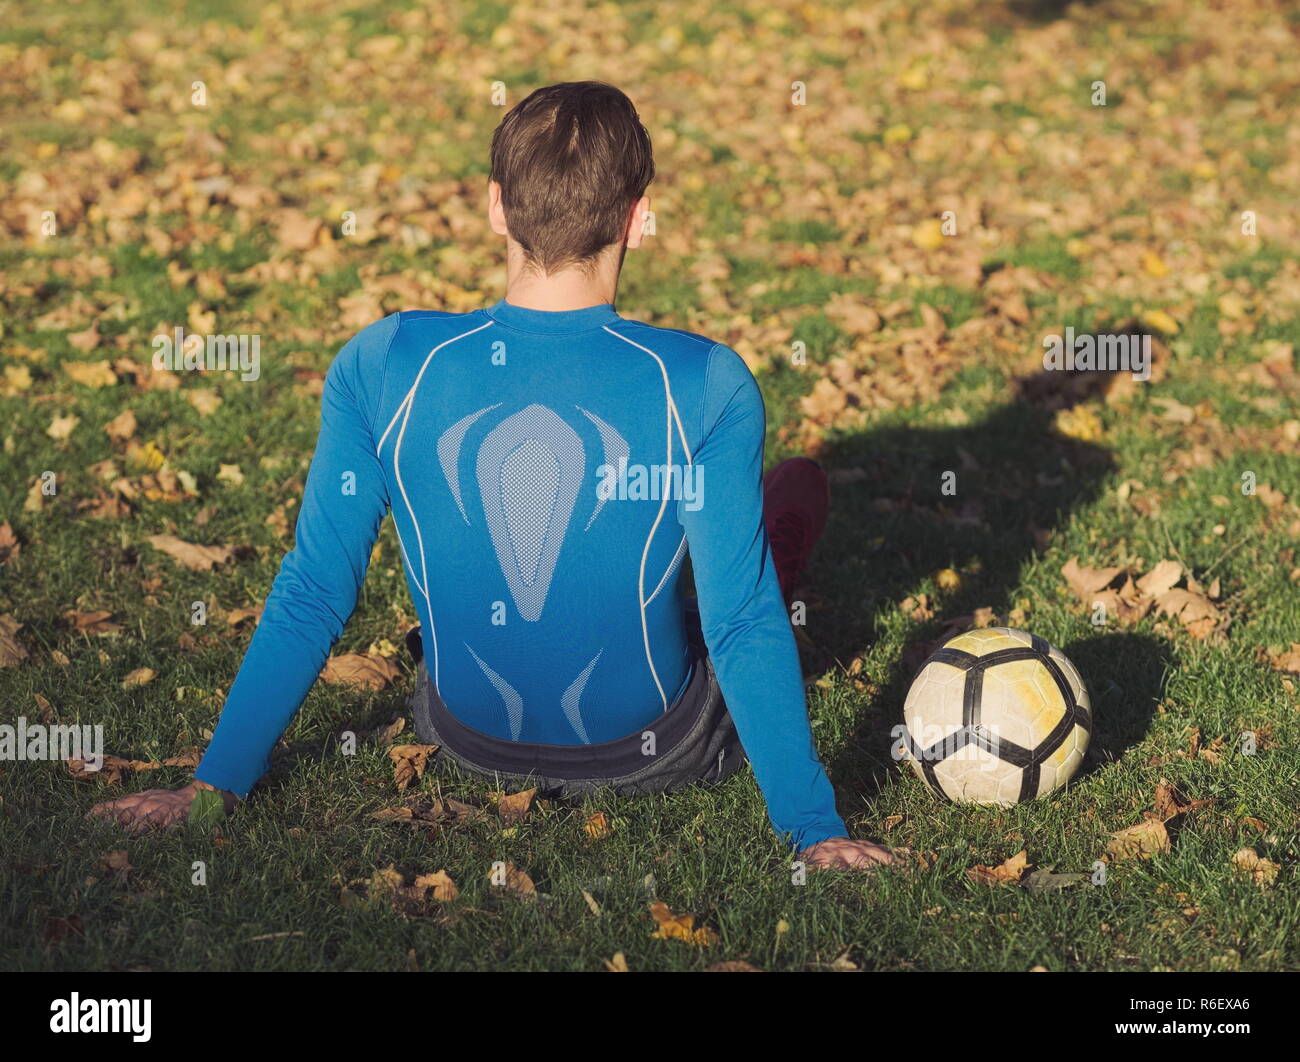 Fußball-Spieler posiert mit Fußball im Park an einem sonnigen Herbsttag Stockfoto